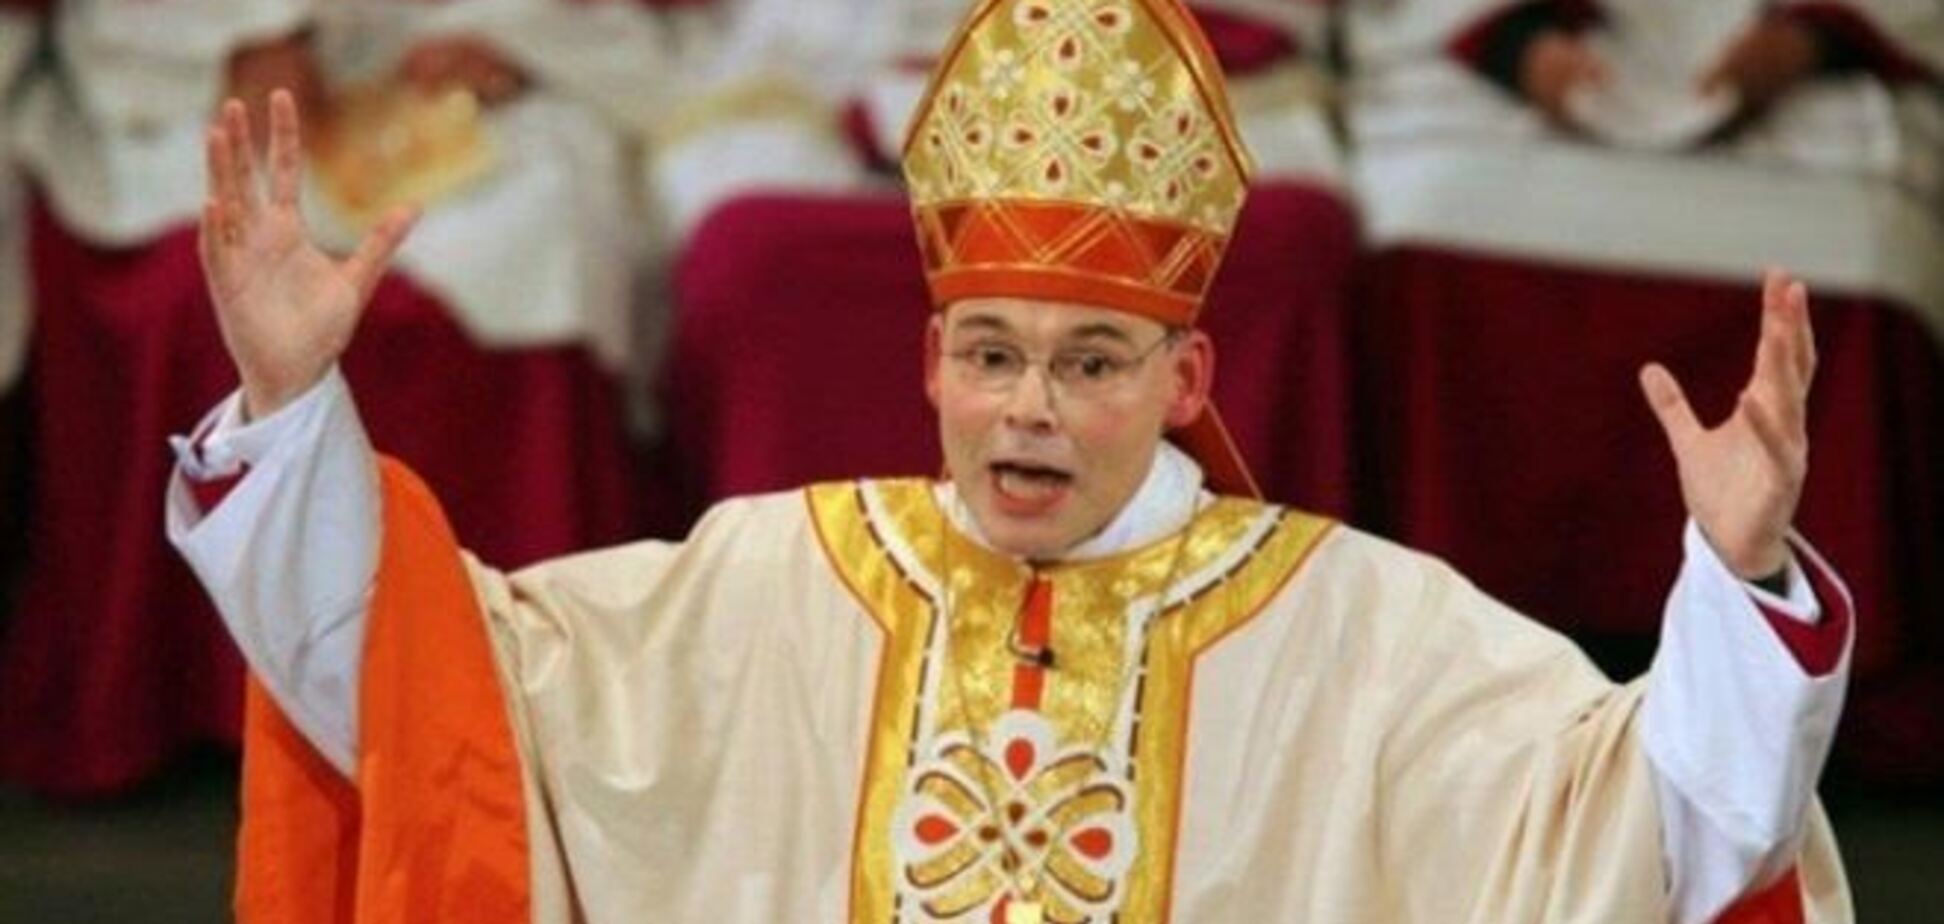 'Роскошный епископ' отчитается перед Ватиканом за свои траты